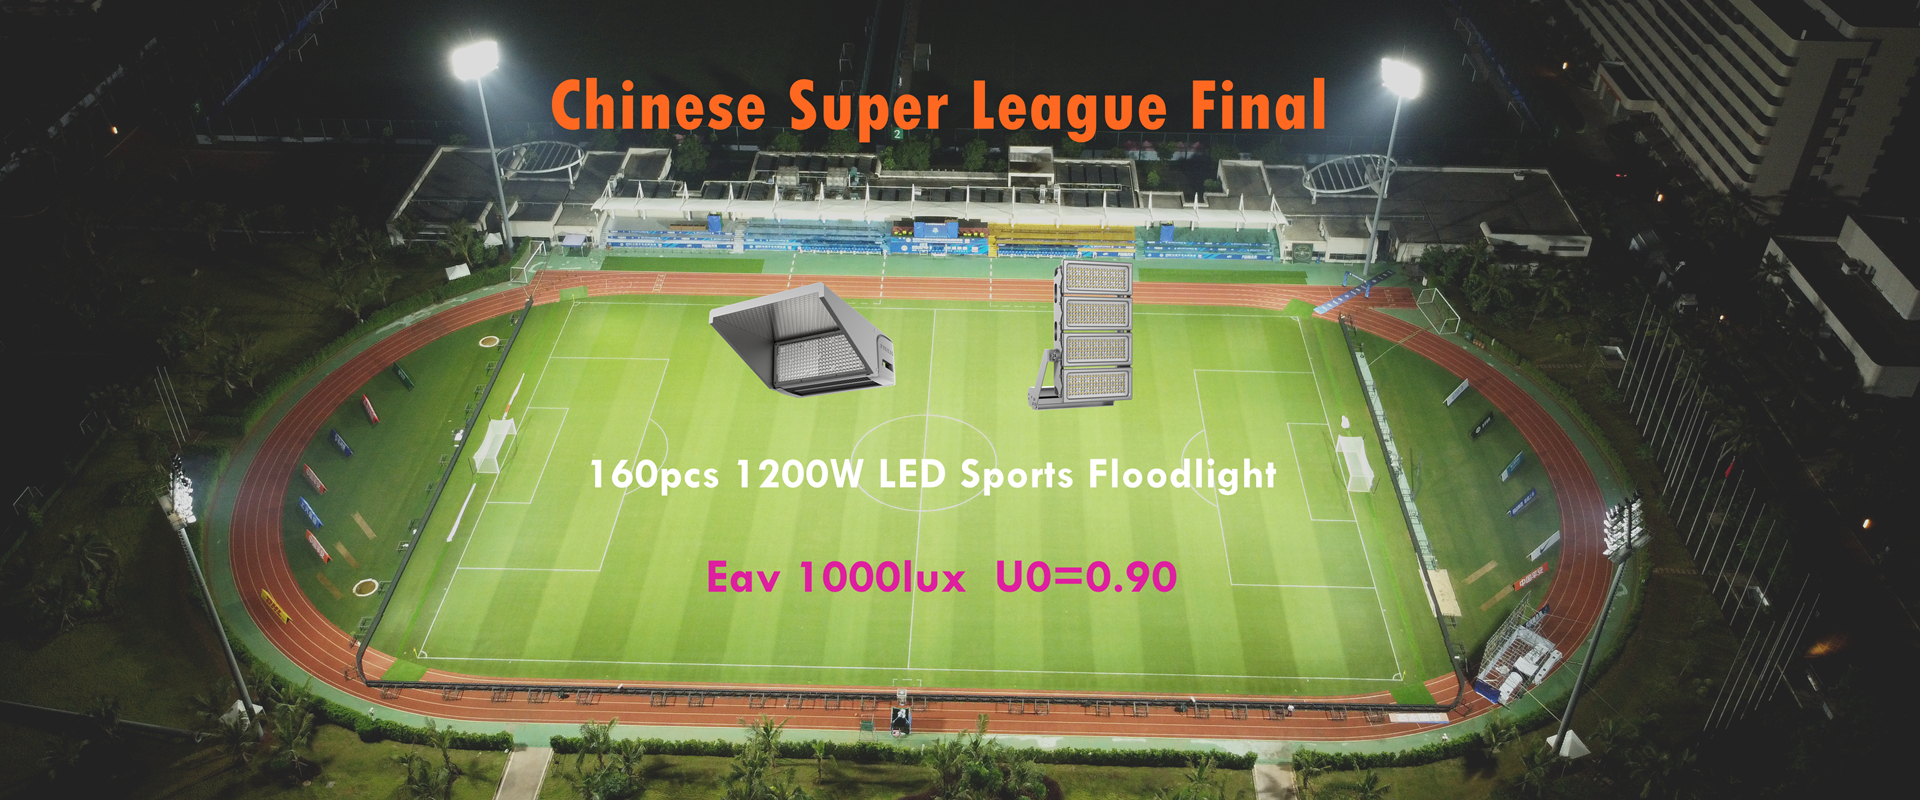 1200W LED sportski reflektor za kinesku super ligu 2022 na fudbalskom stadionu Haikou